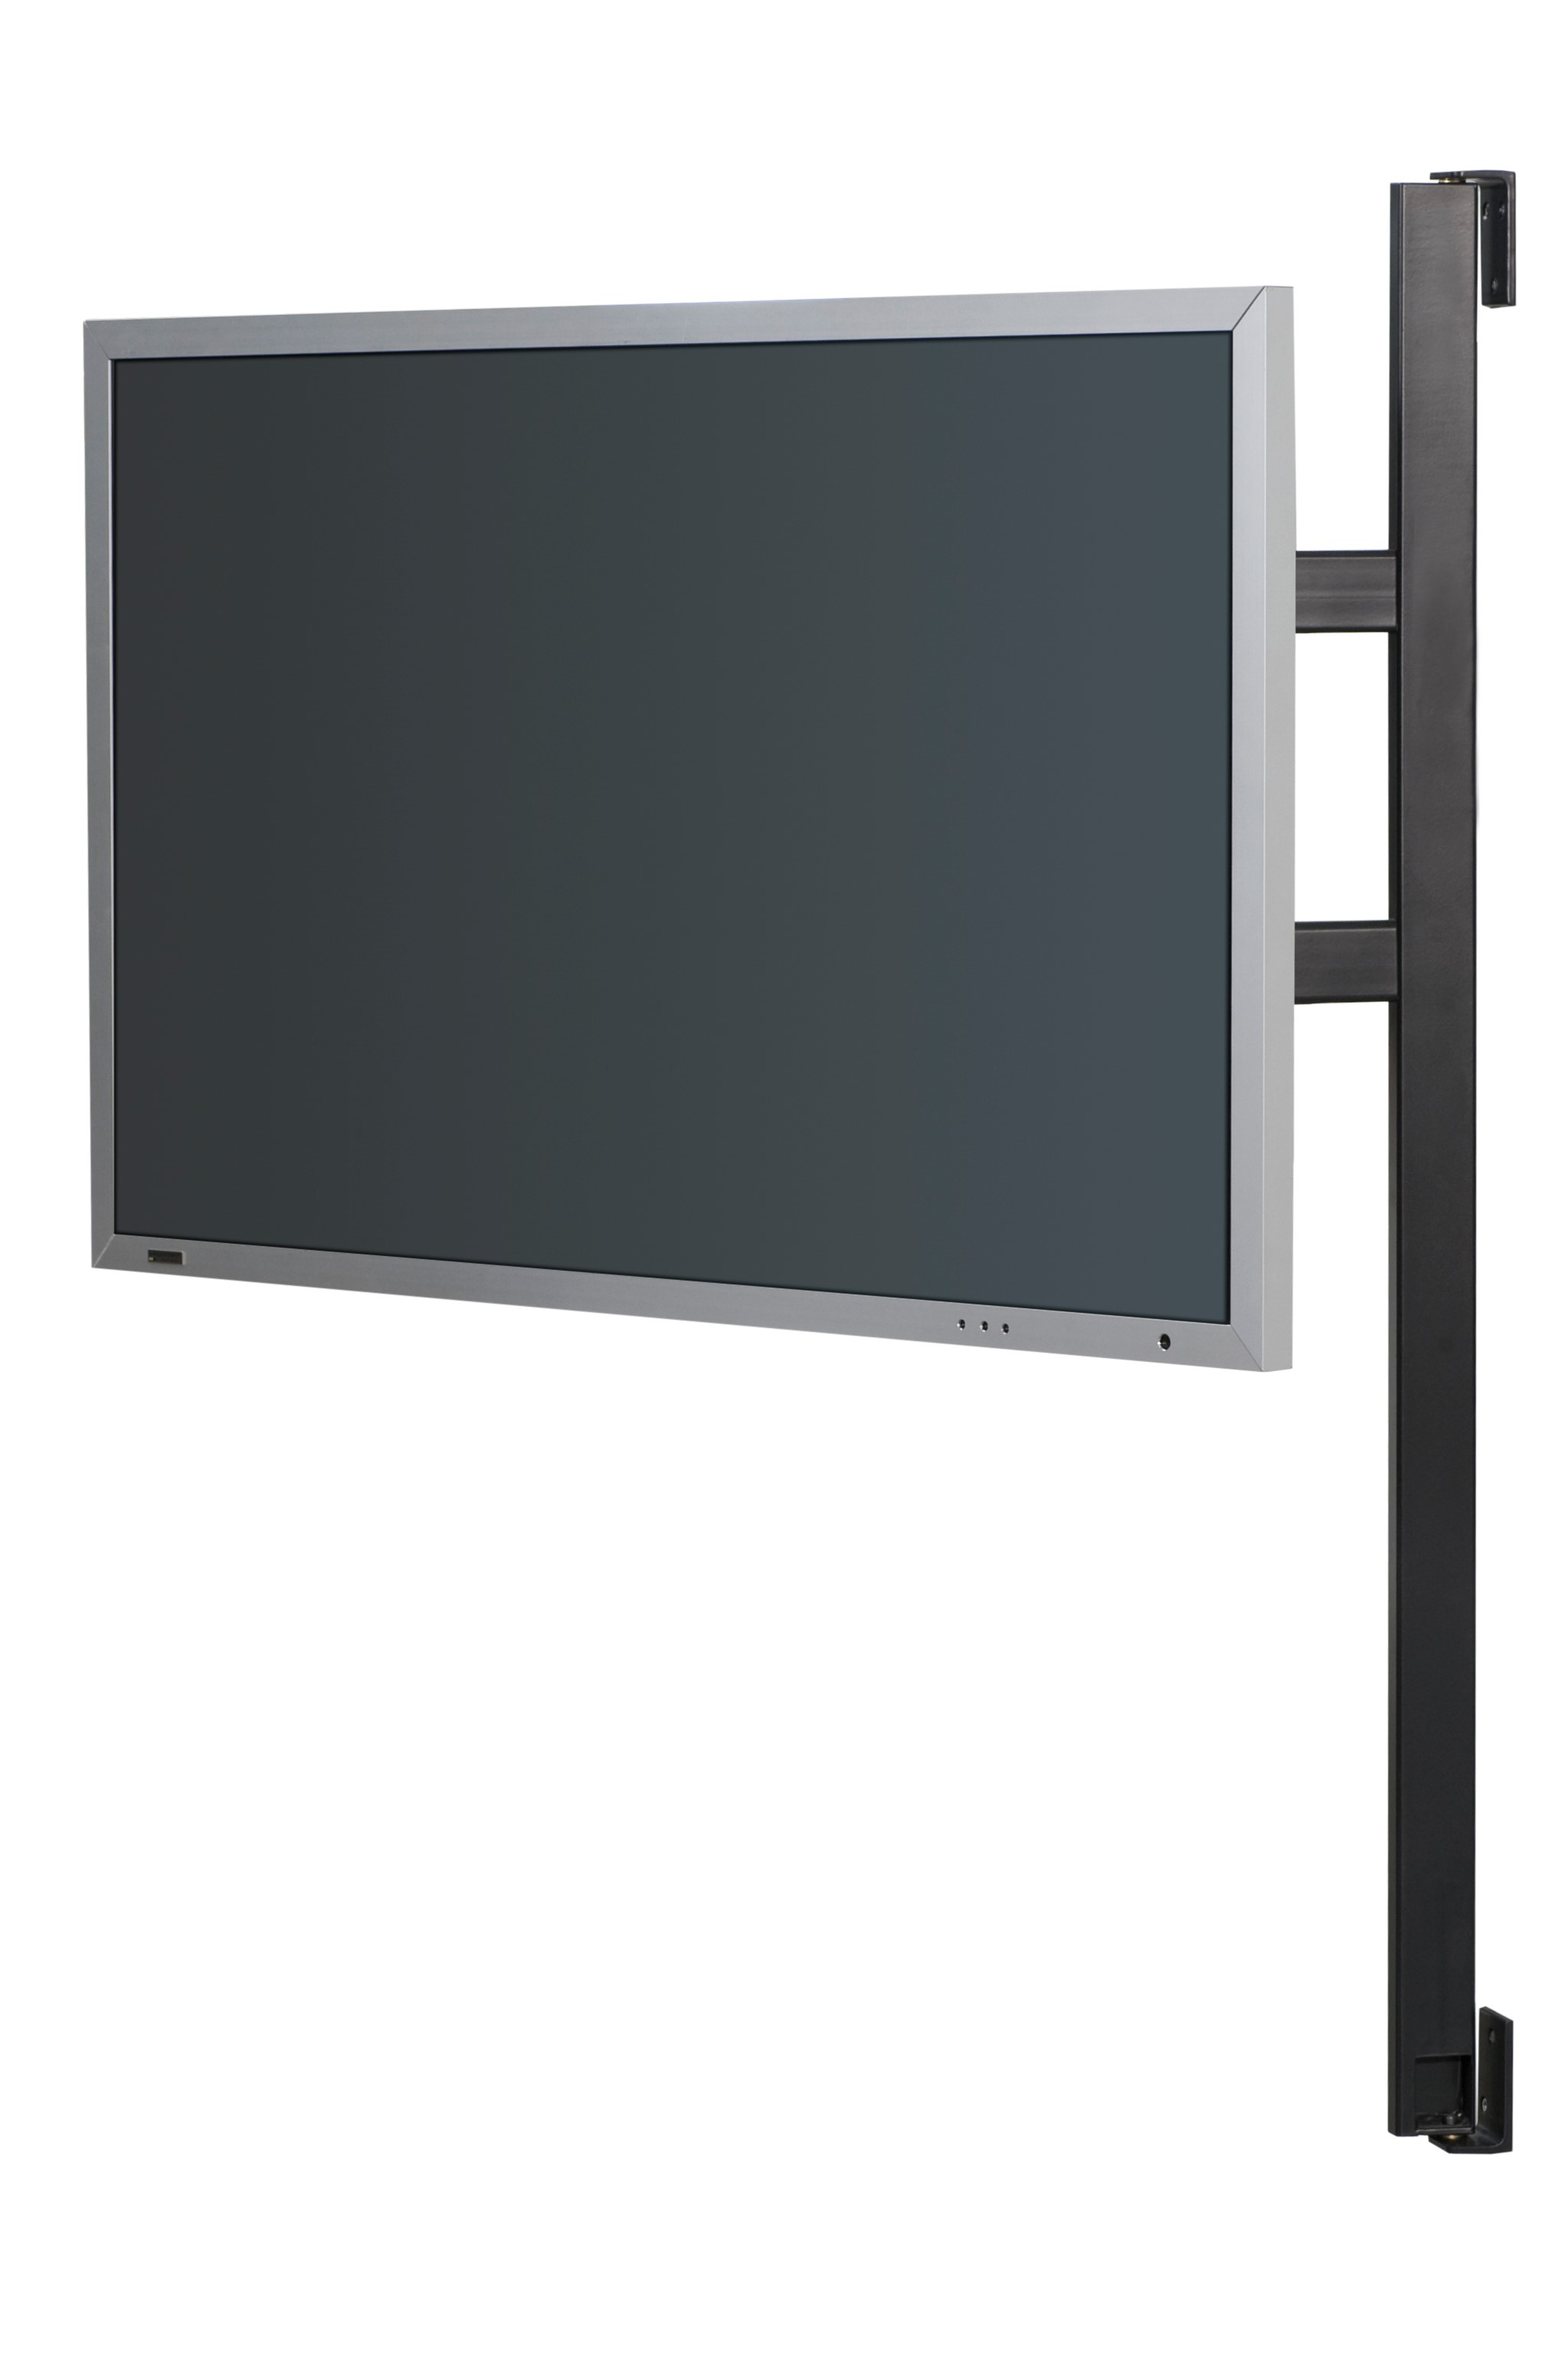 WISSMANN RAUMOBJEKTE solution art 121 TV-Wandhalterung, 2 schwarz Gr